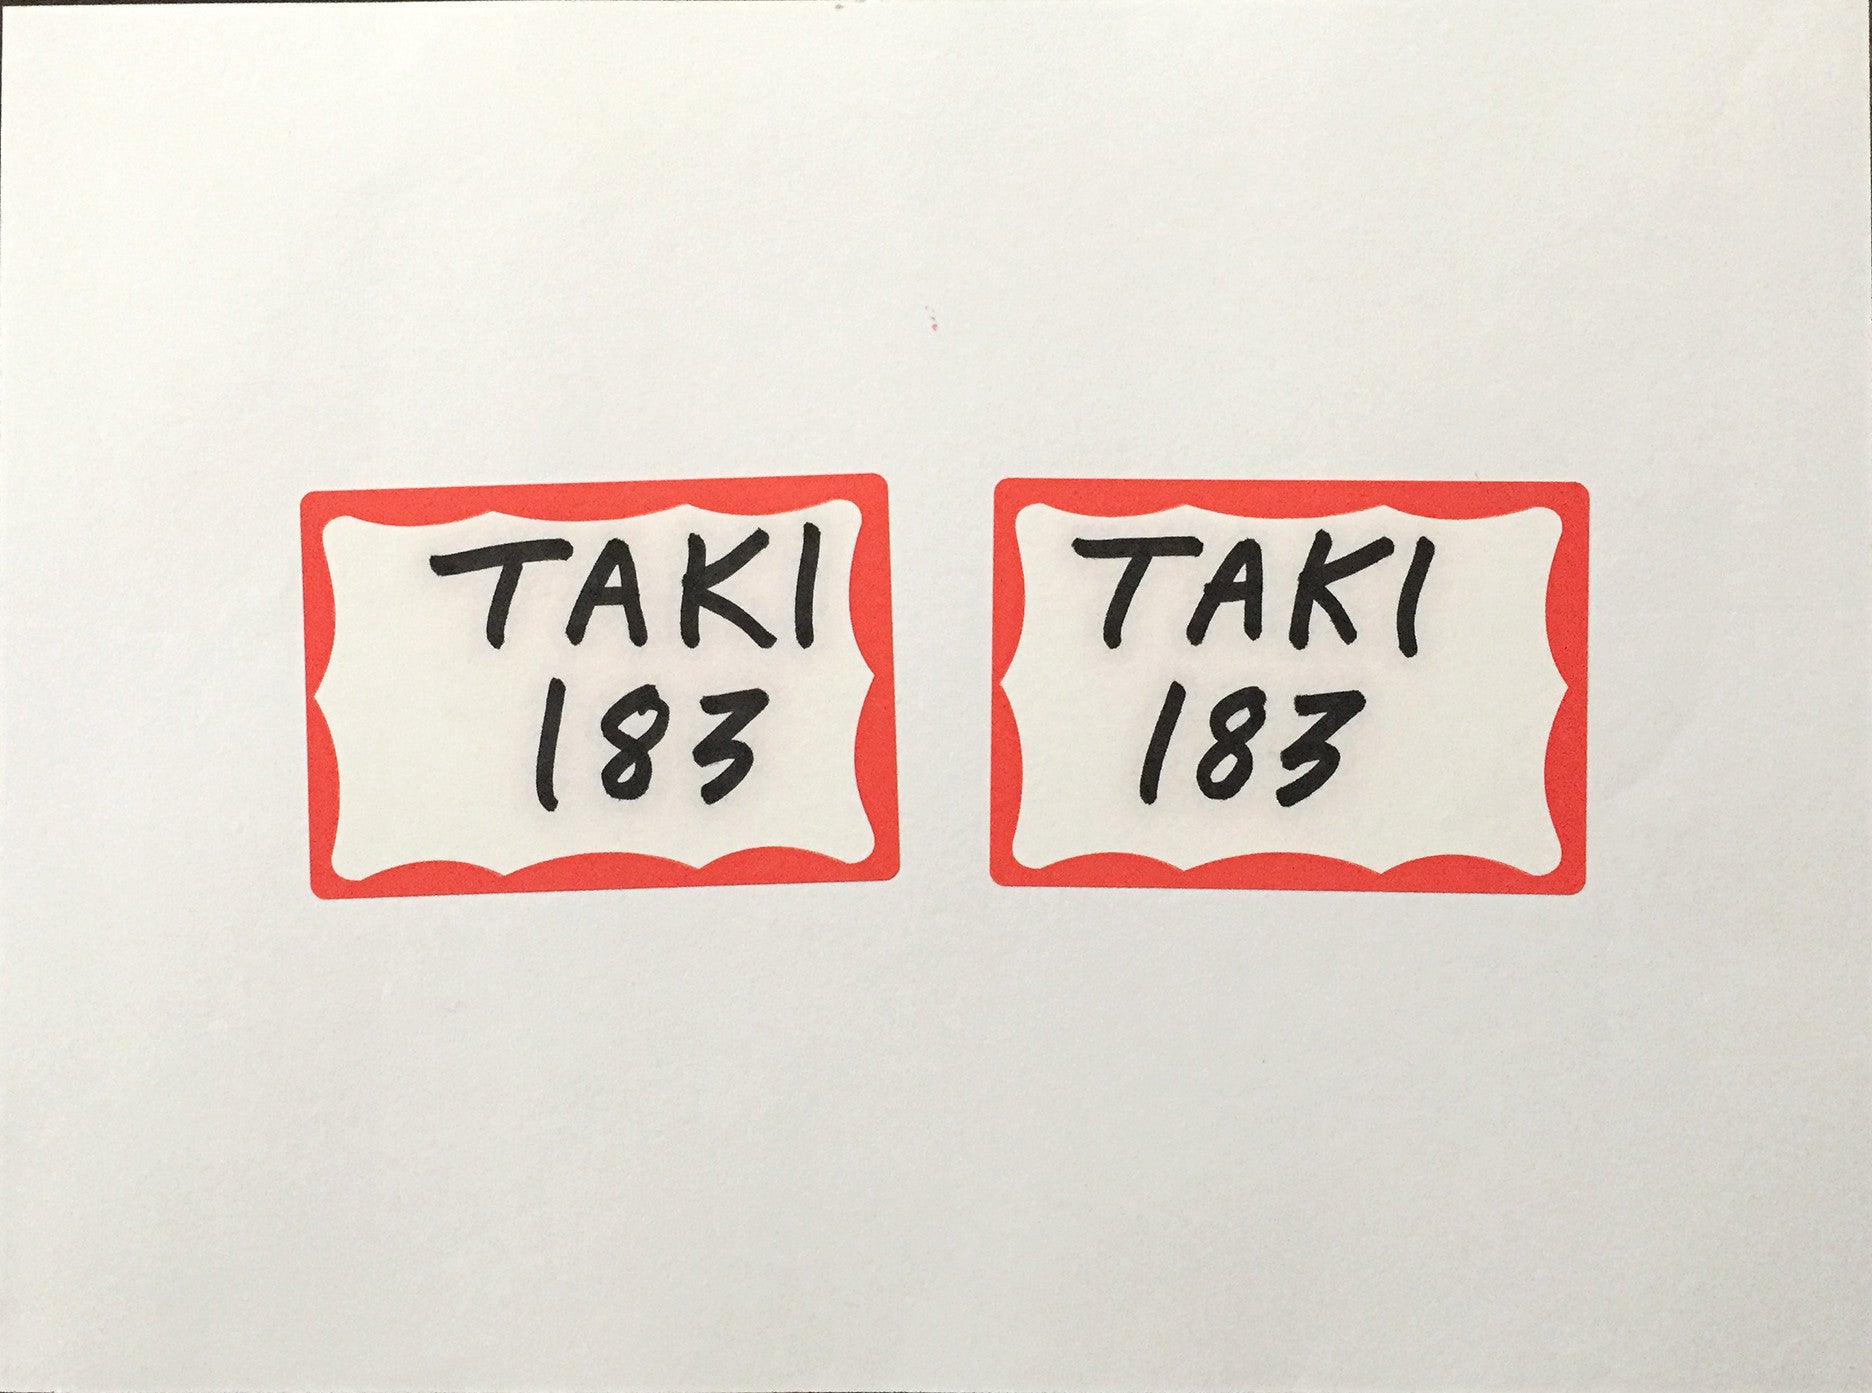 TAKI-183  "Piece Book" Labels